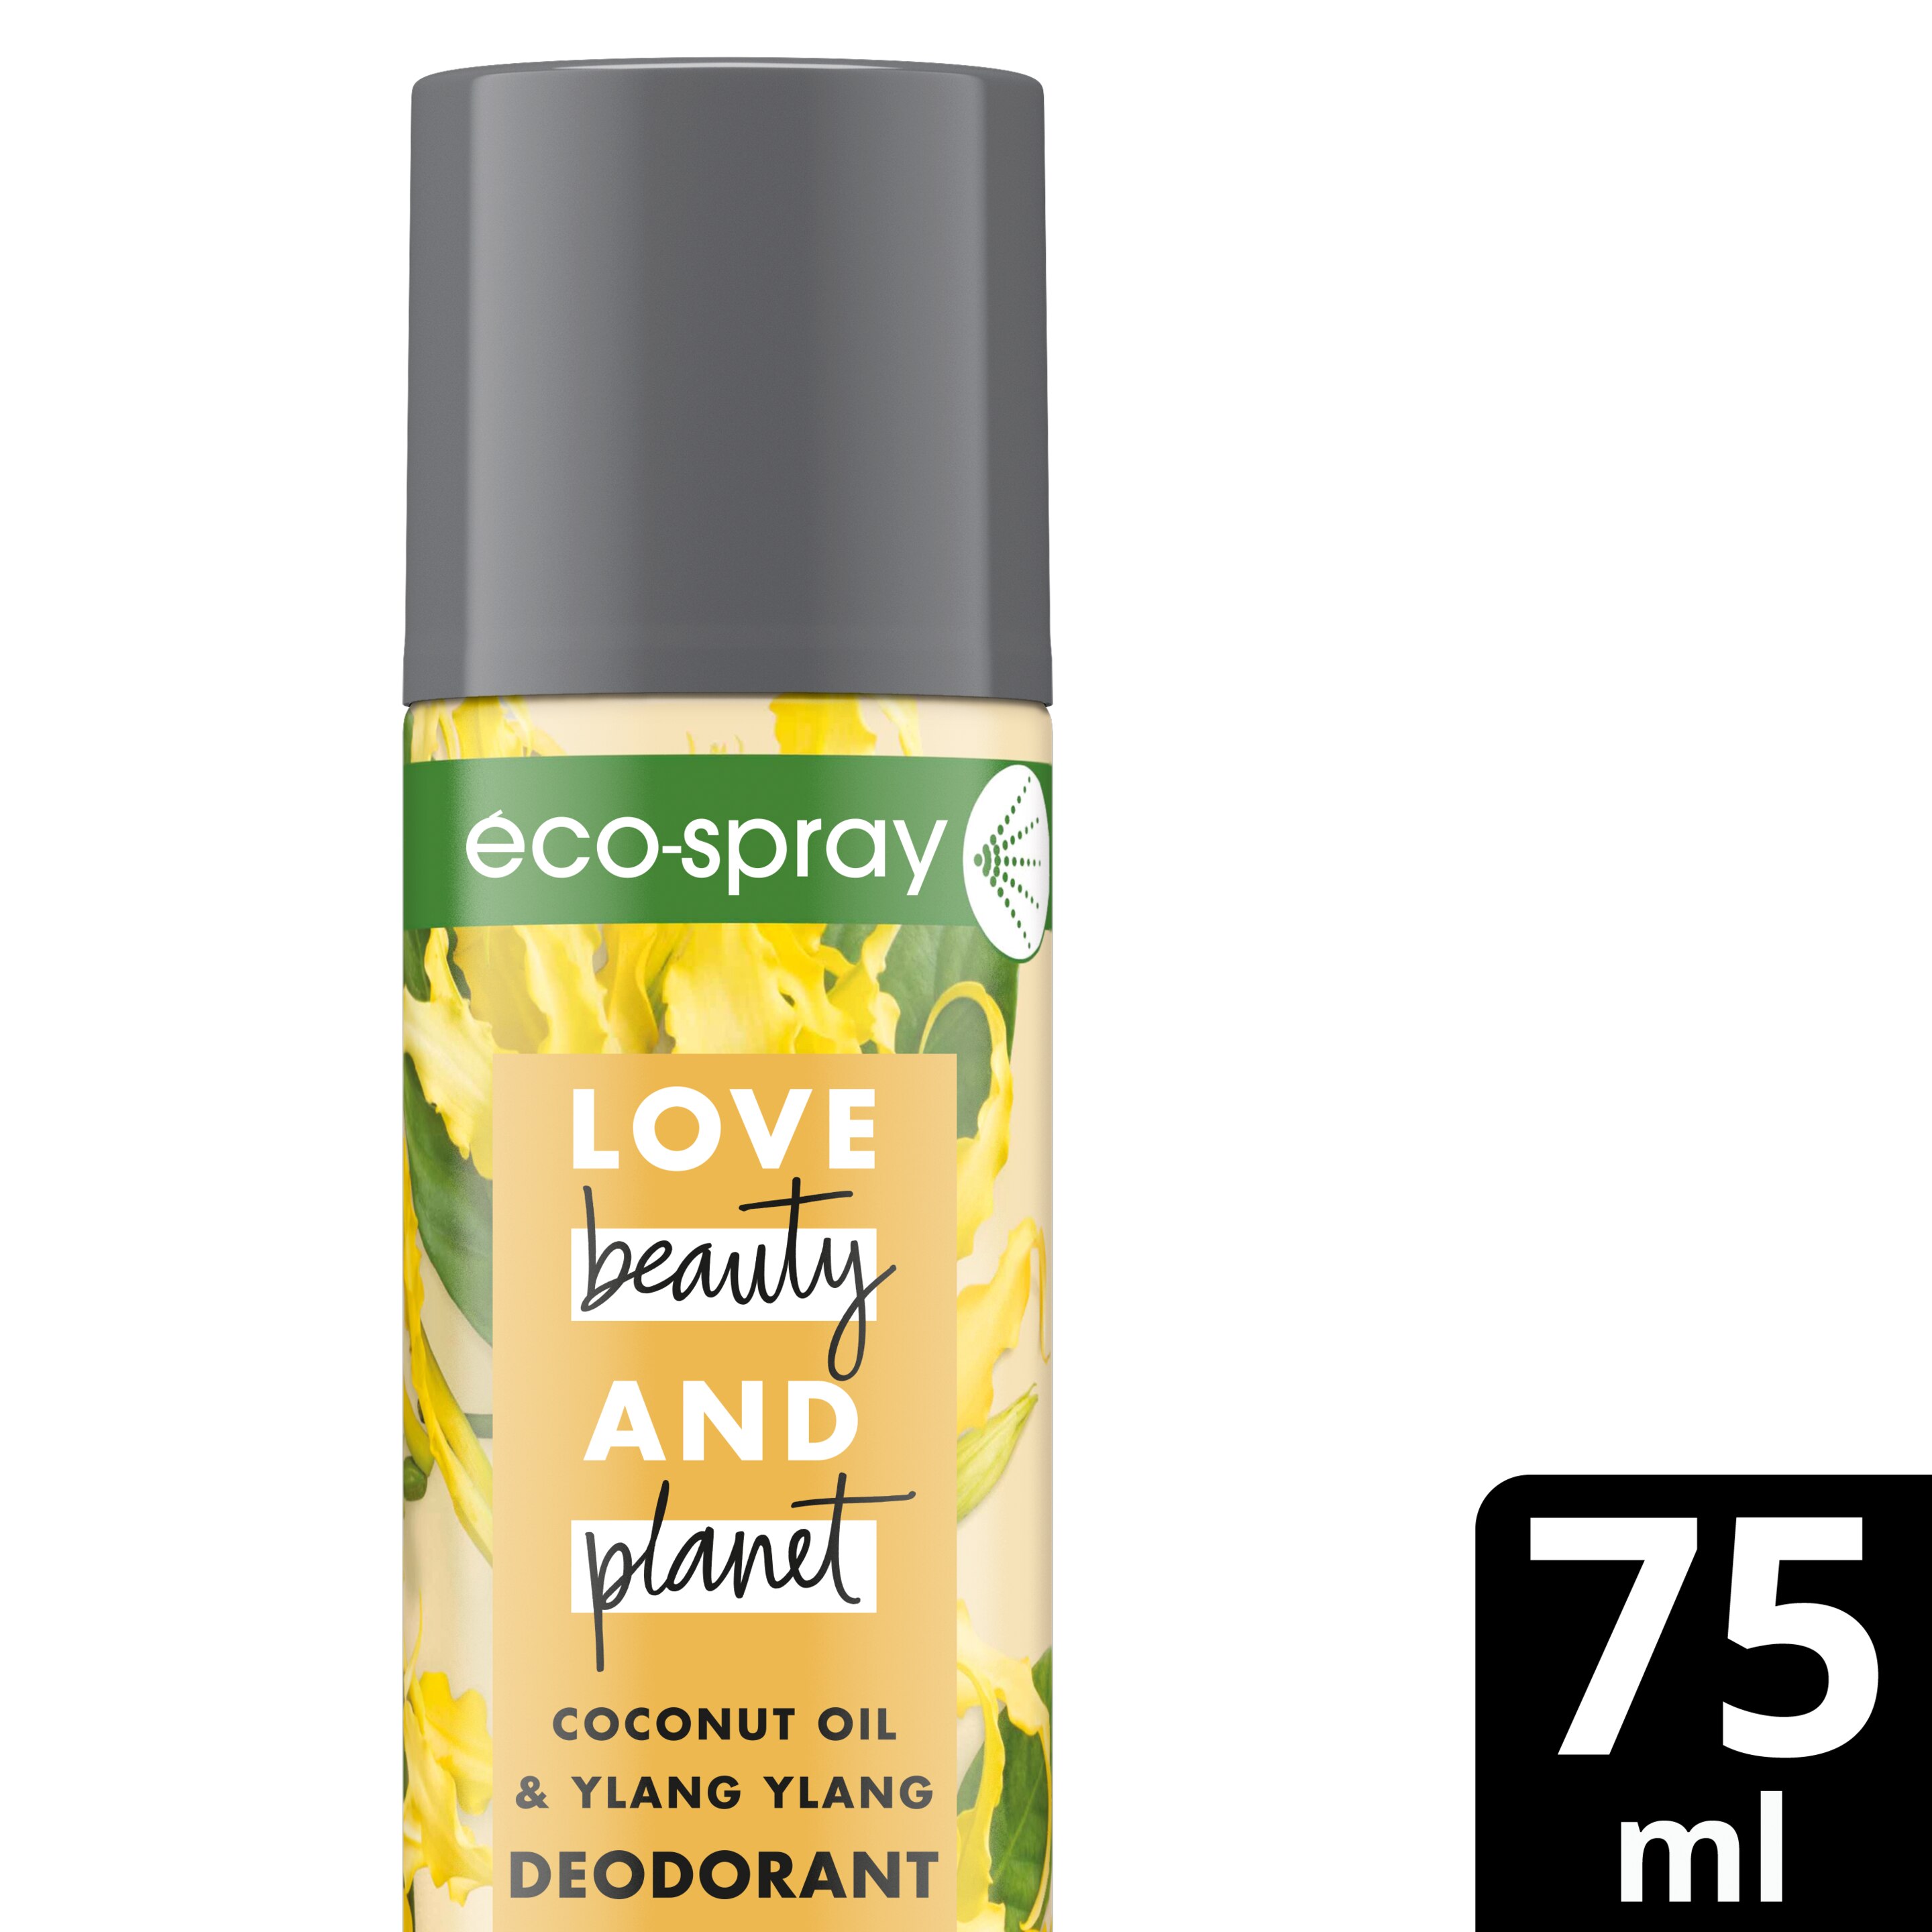 Achterkant verpakkingLove Beauty and Planet Coconut Oil & Ylang Ylang Deodorant verrijkt met kokosolie en ylang ylang Energizing Eco-spray